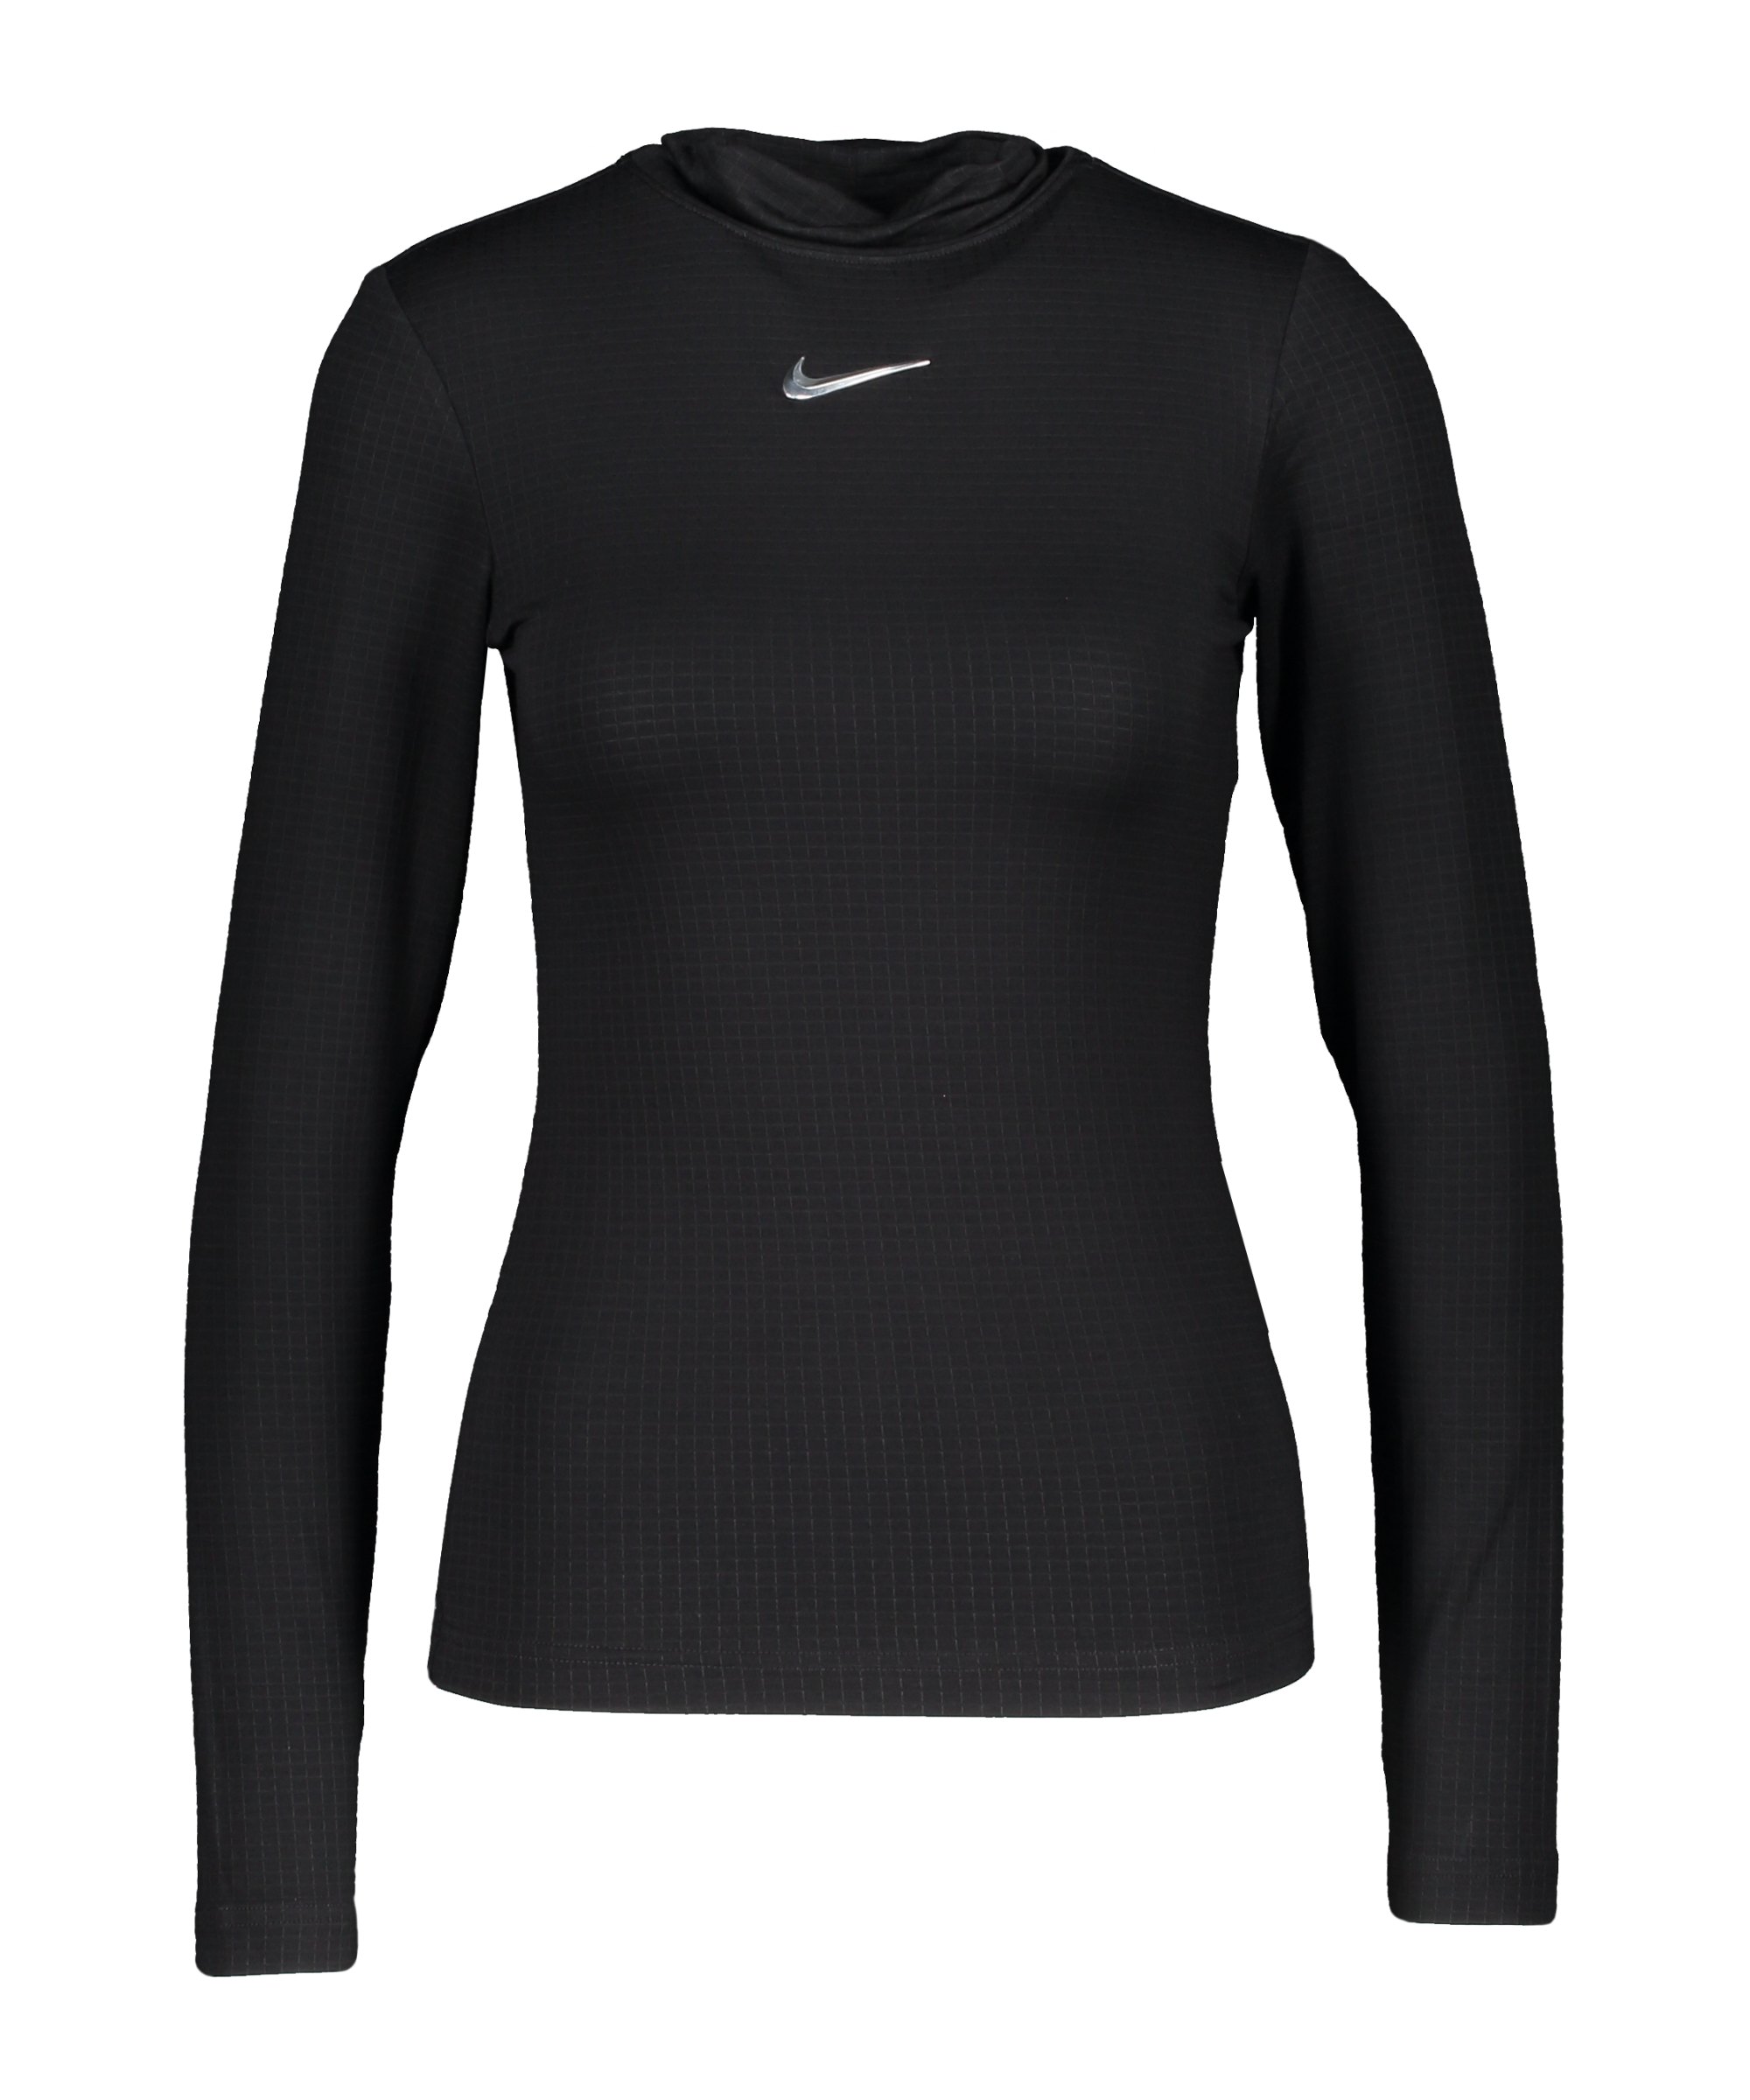 Nike Swoosh Mock Sweatshirt Damen Schwarz F010 - schwarz